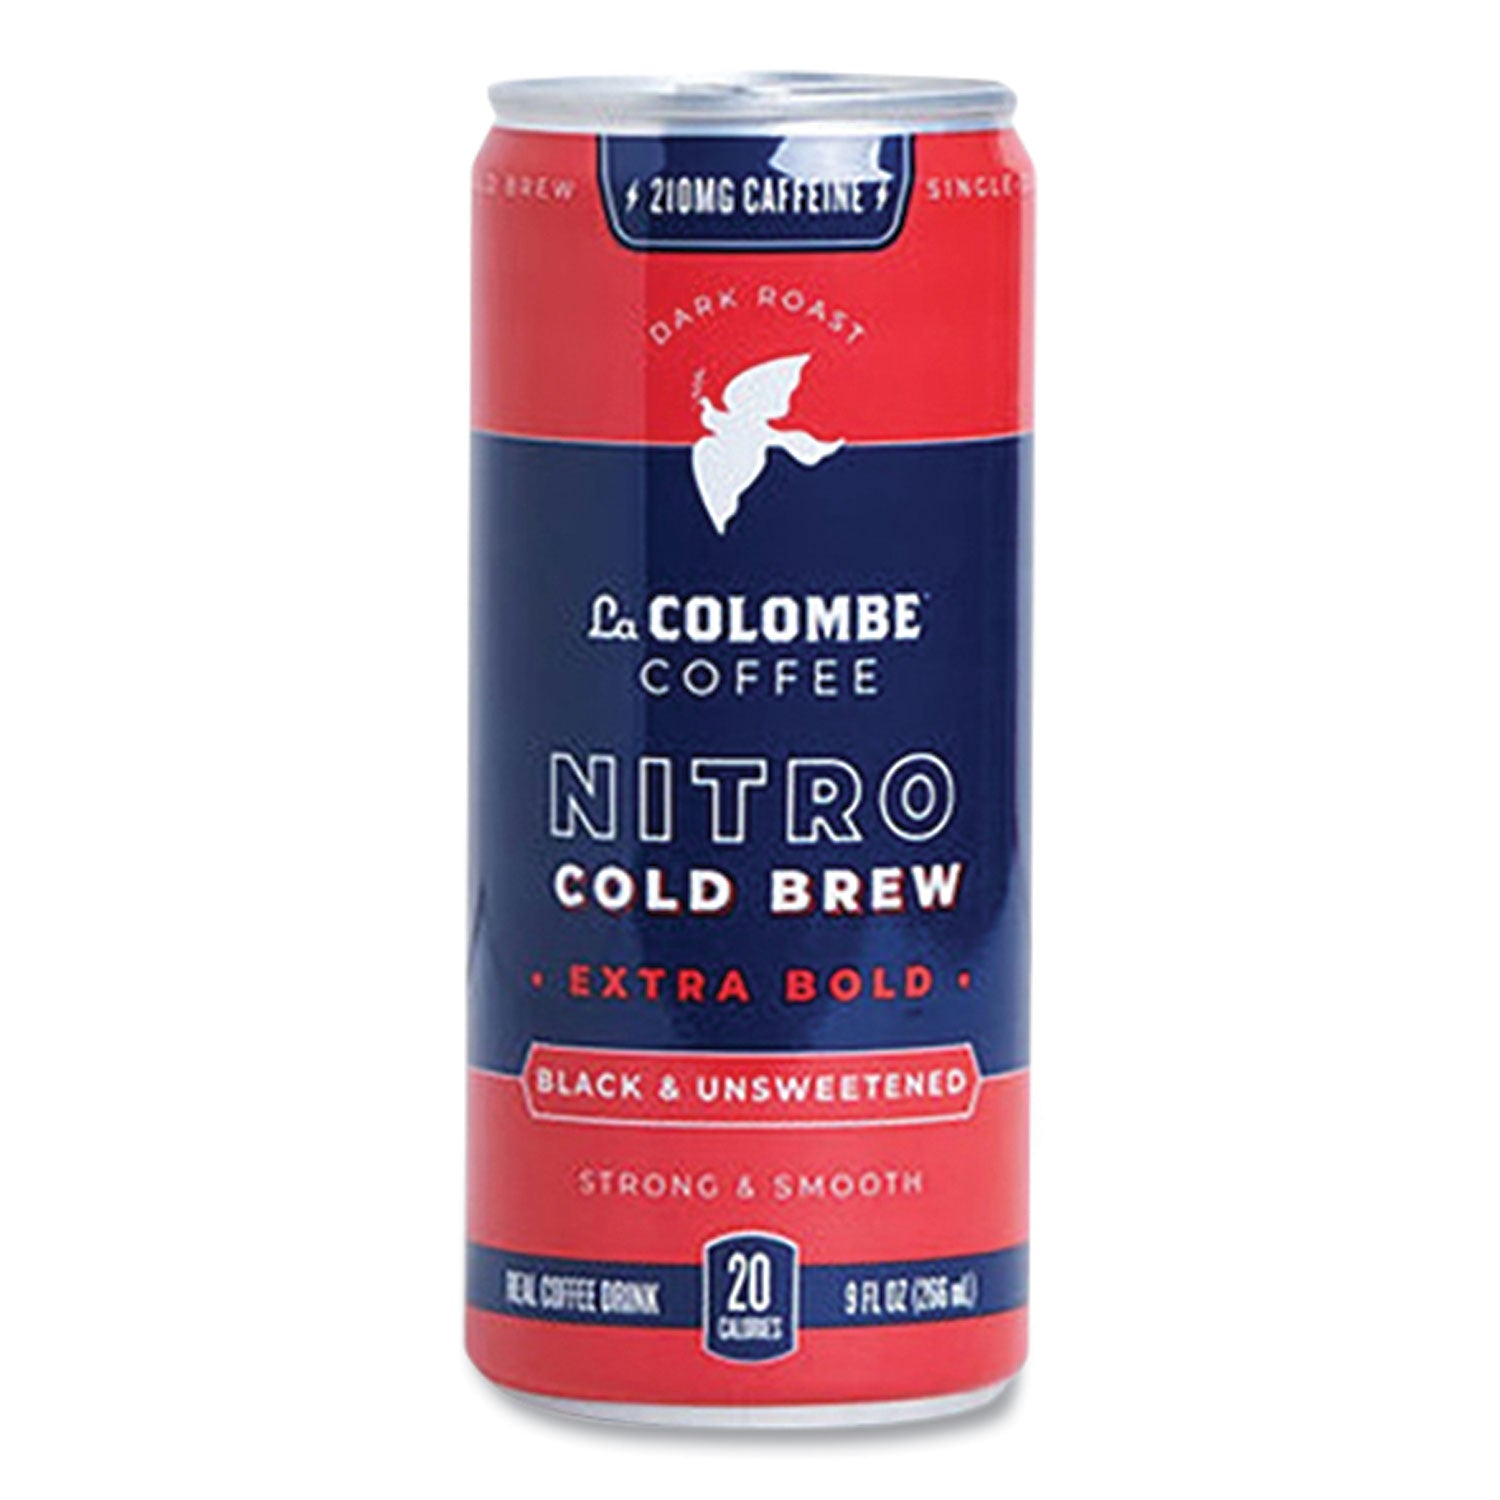 cold-brew-coffee-nitro-extra-bold-9-oz-can-12-carton_lal00421 - 1